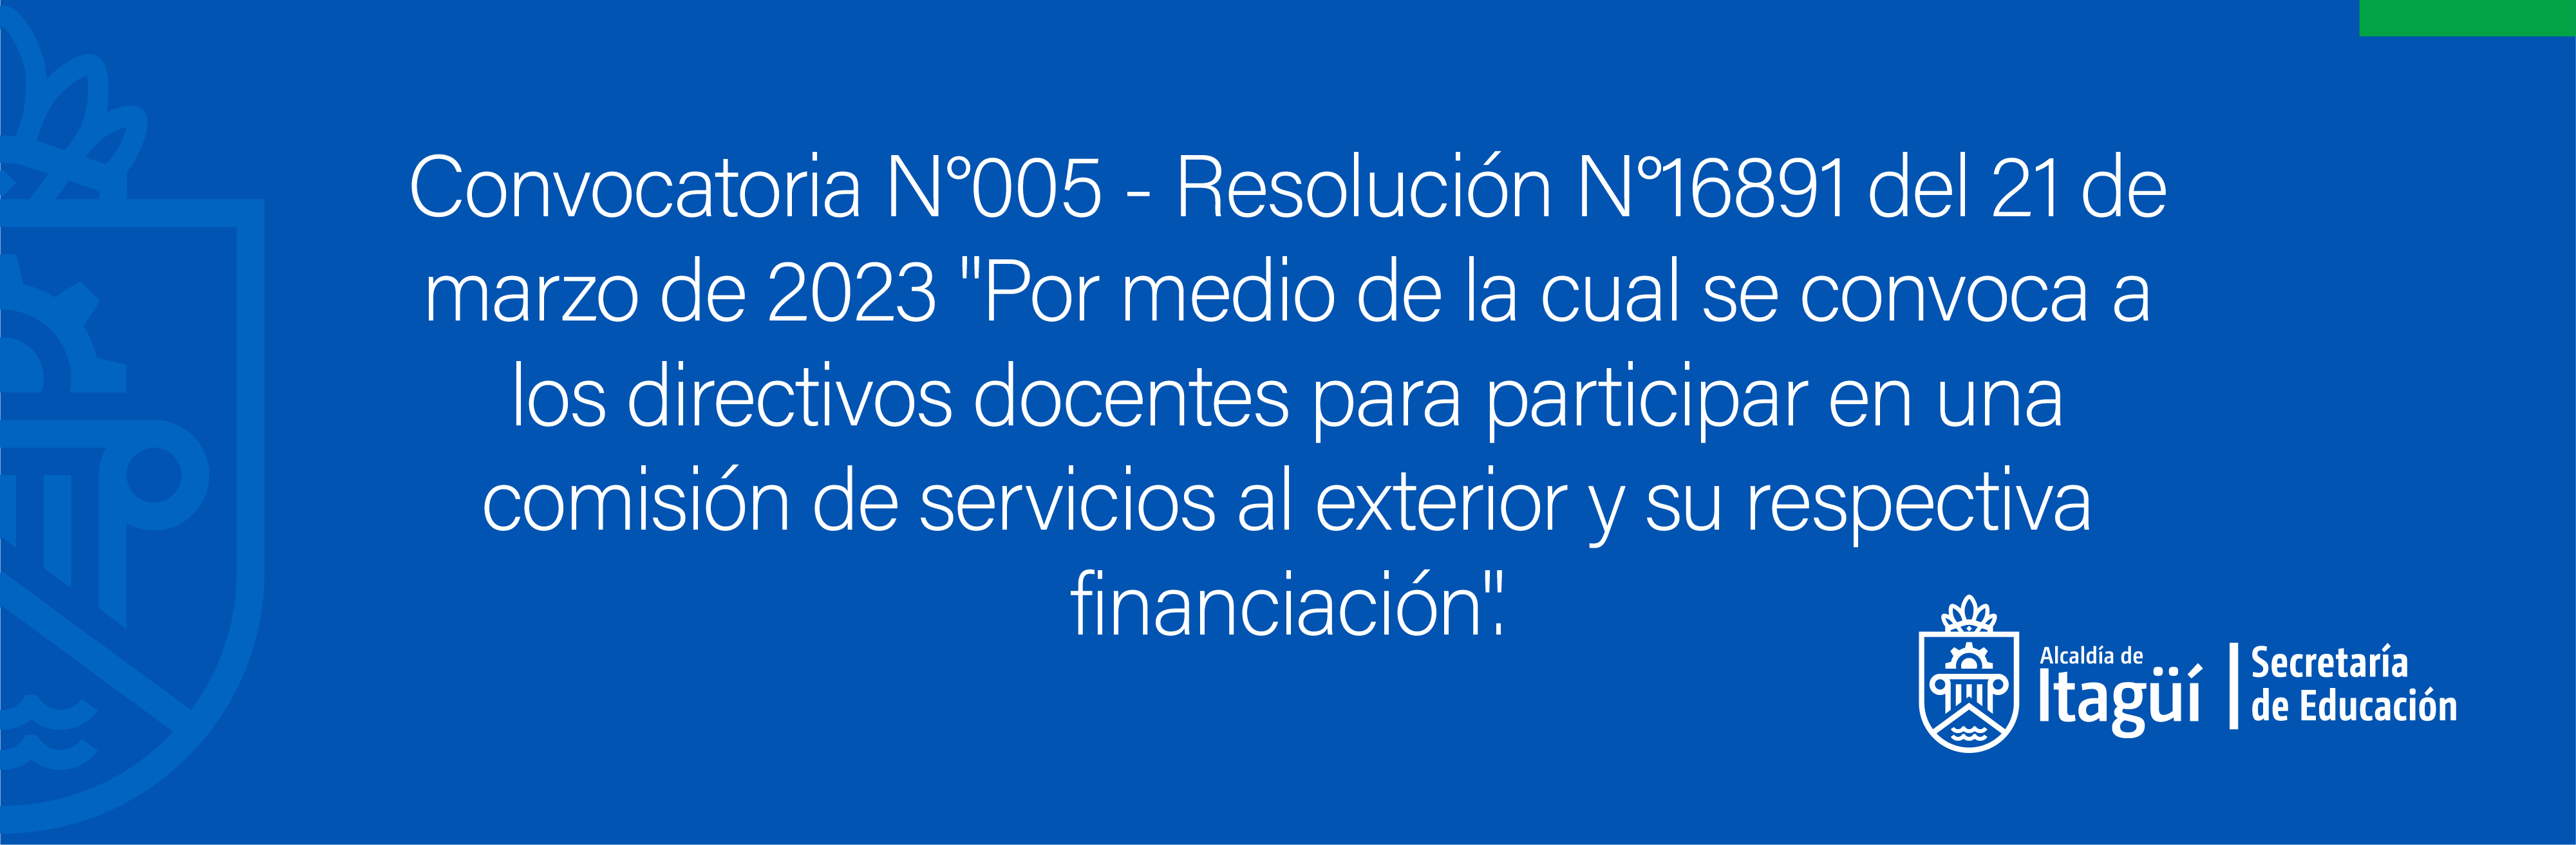 Convocatoria No. 005 - Resolución No. 16891 del 21 de marzo de 2023 - Por medio de la cual se convoca a los directivos docentes para participar en una comisión de servicios al exterior y su respectiva financiación